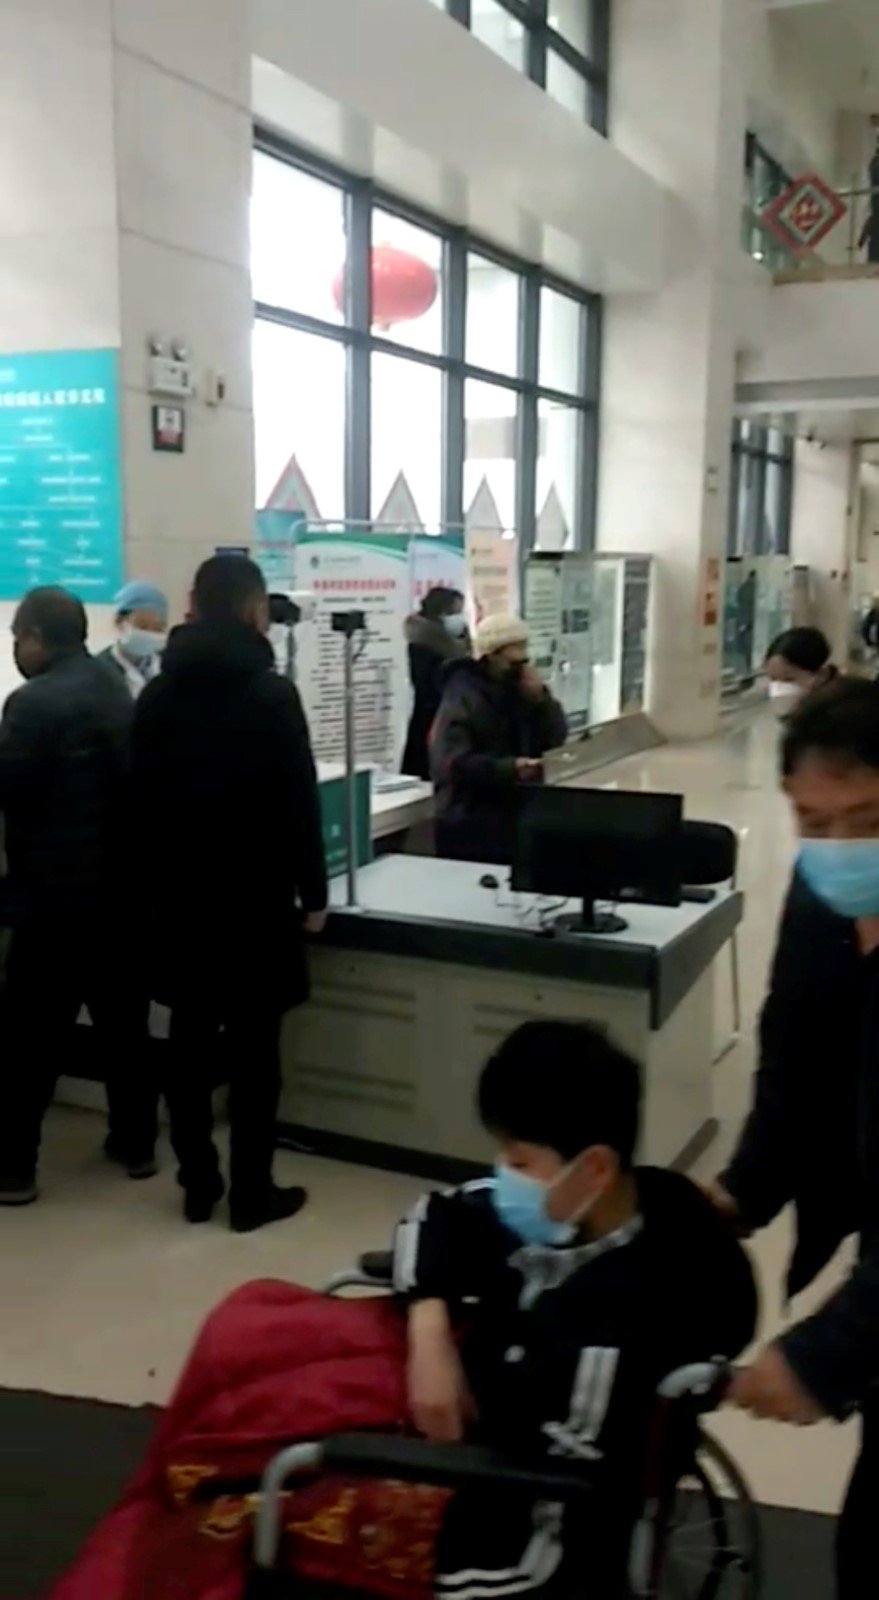 Čínu děsí nový typ koronaviru. Obyvatelé nosí roušky.